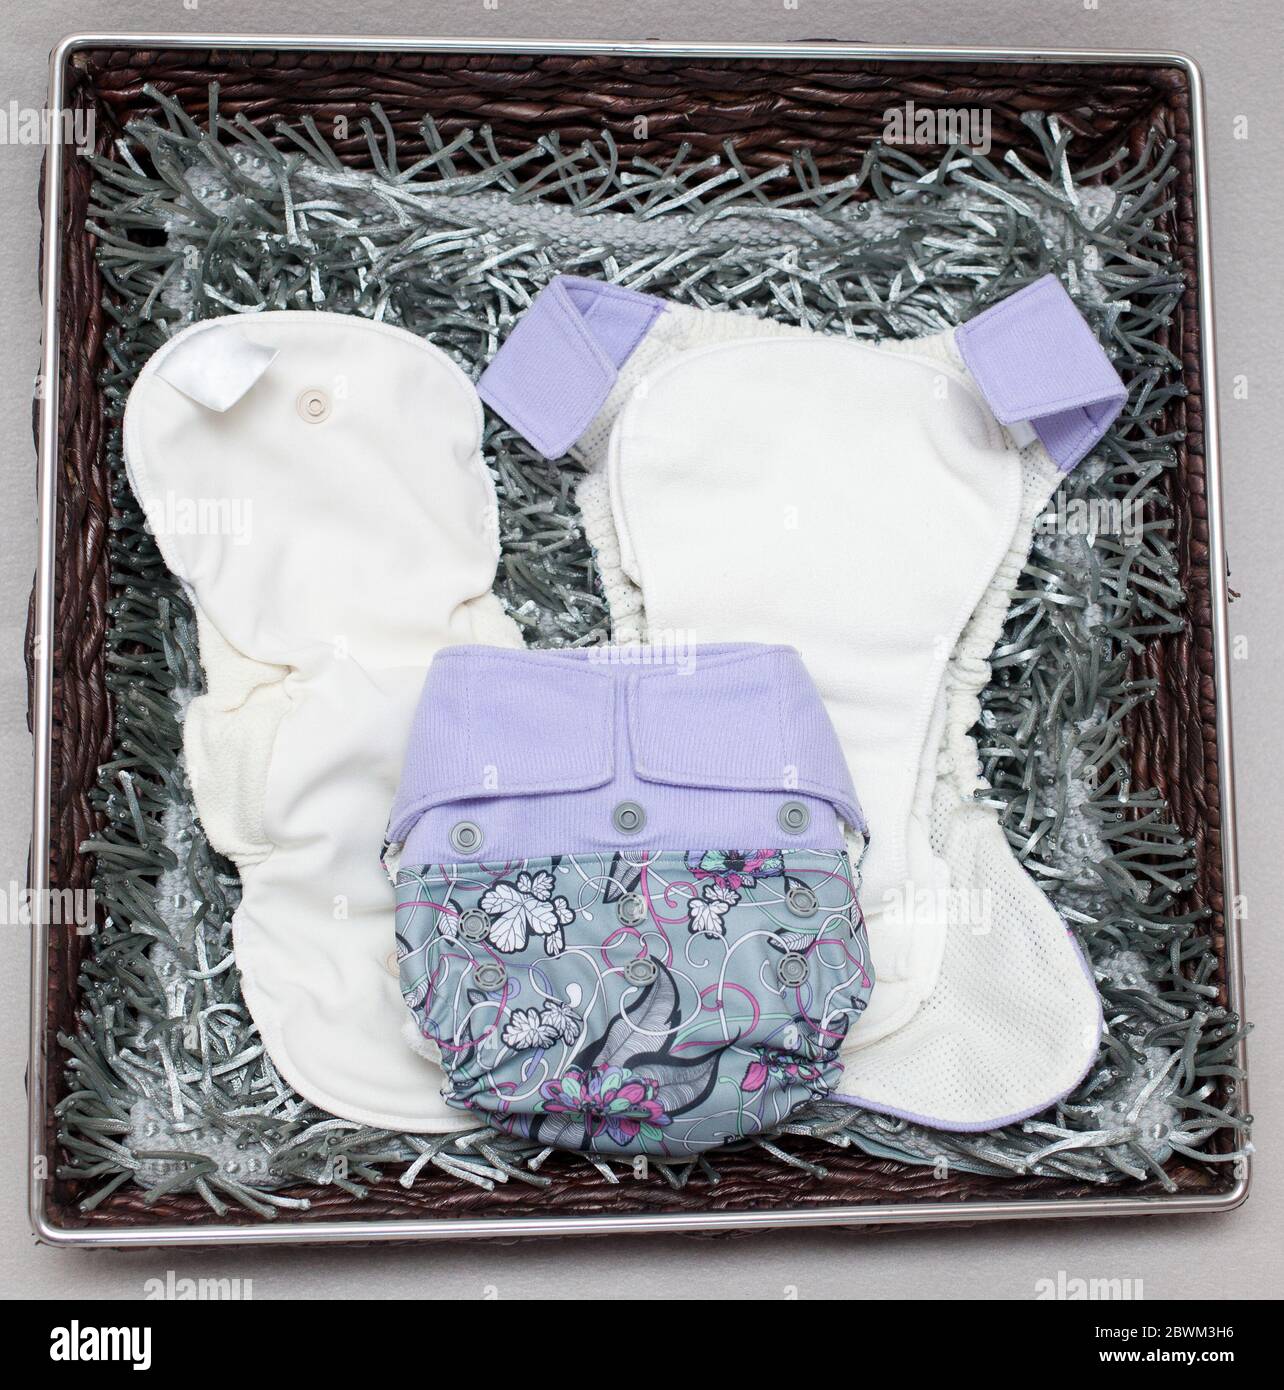 Bebé vistiendo rosa pañales reutilizables / pañal (con modelo de liberación  Fotografía de stock - Alamy